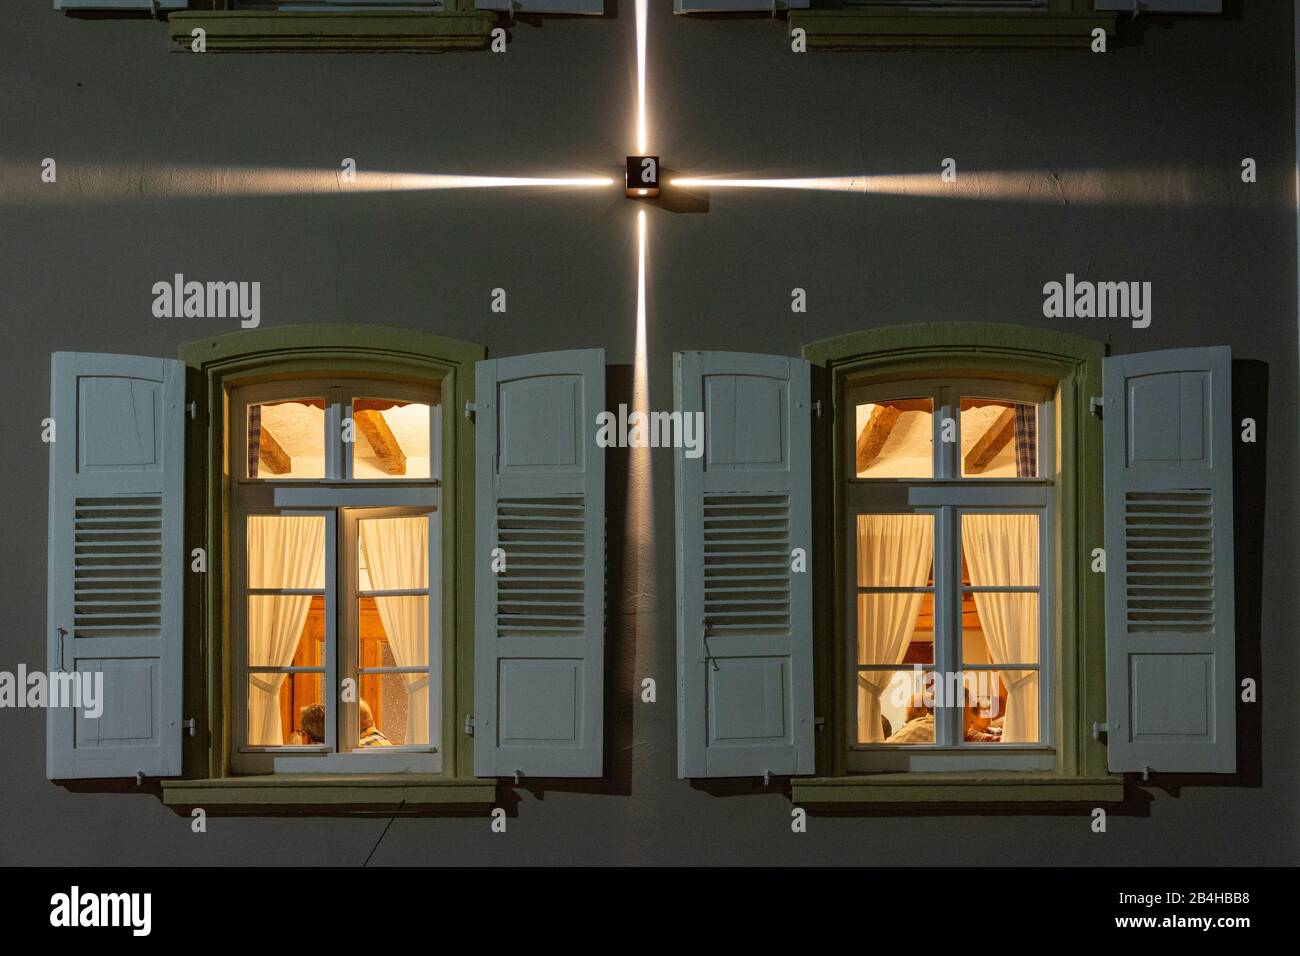 Germany, Rheinlandpfalz, Schweigen-Rechtenbach, lit windows of a restaurant. Stock Photo